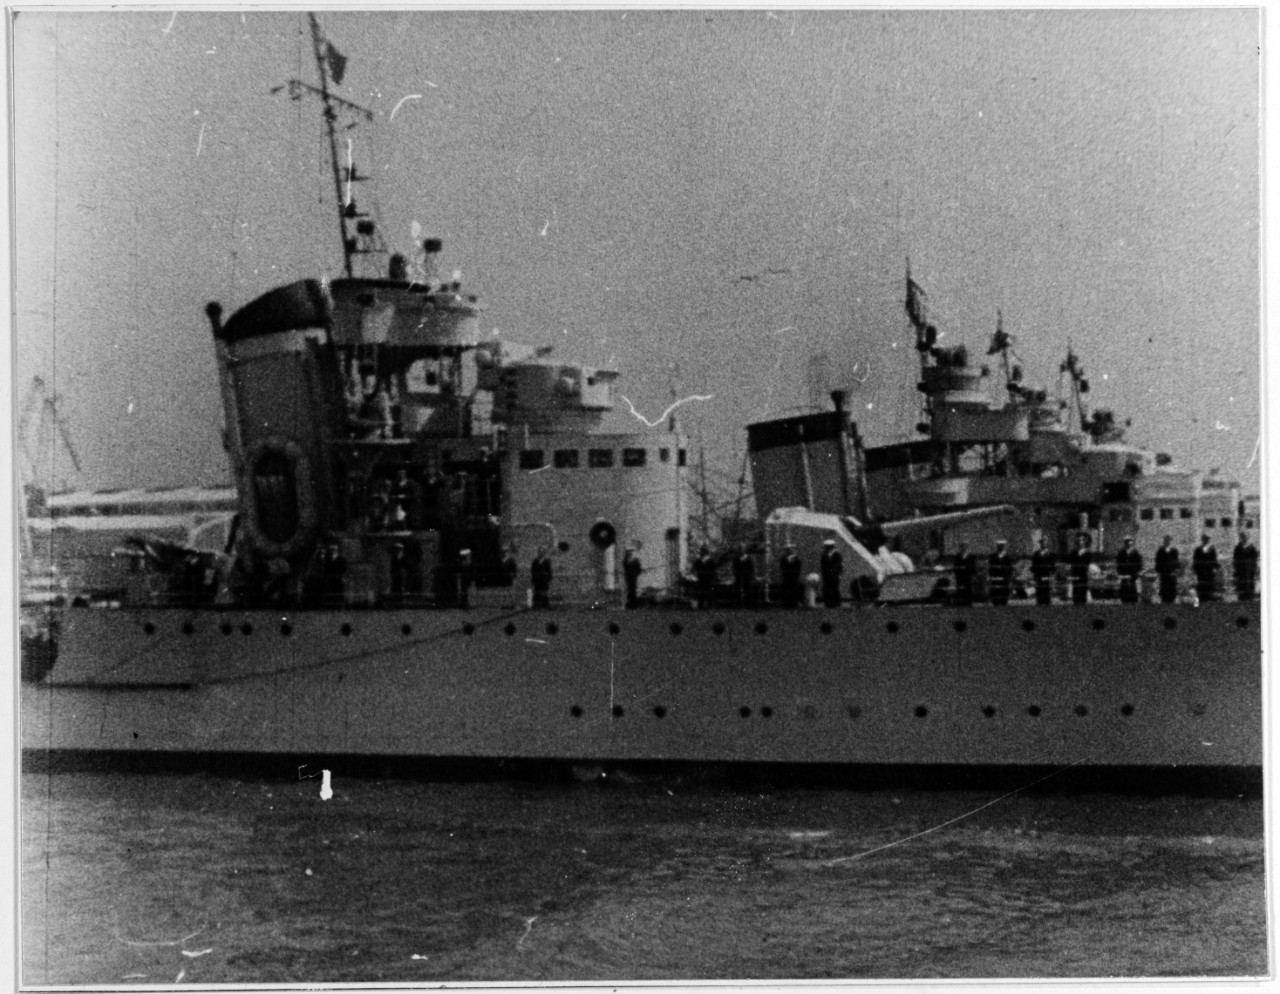 Italian destroyers before World War II.